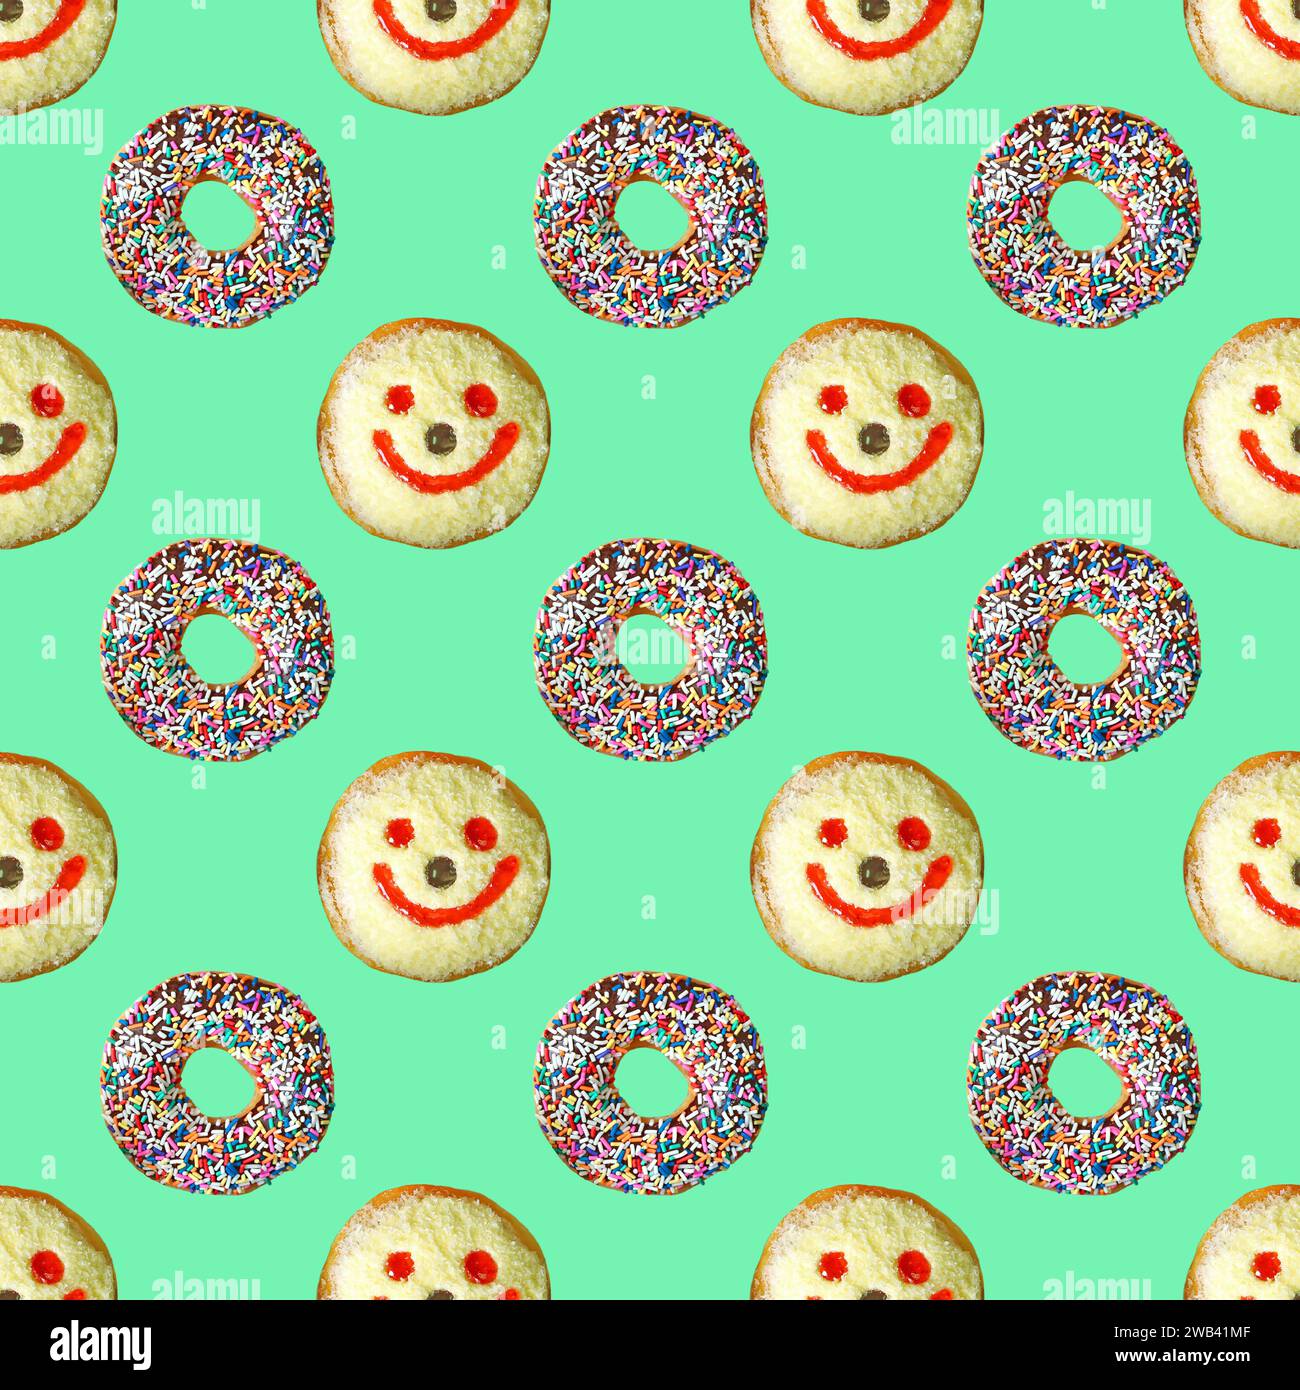 Schokolade glasierte Donuts mit lächelndem Gesicht Kokosflocken Donuts Muster auf minzgrünem Hintergrund Stockfoto